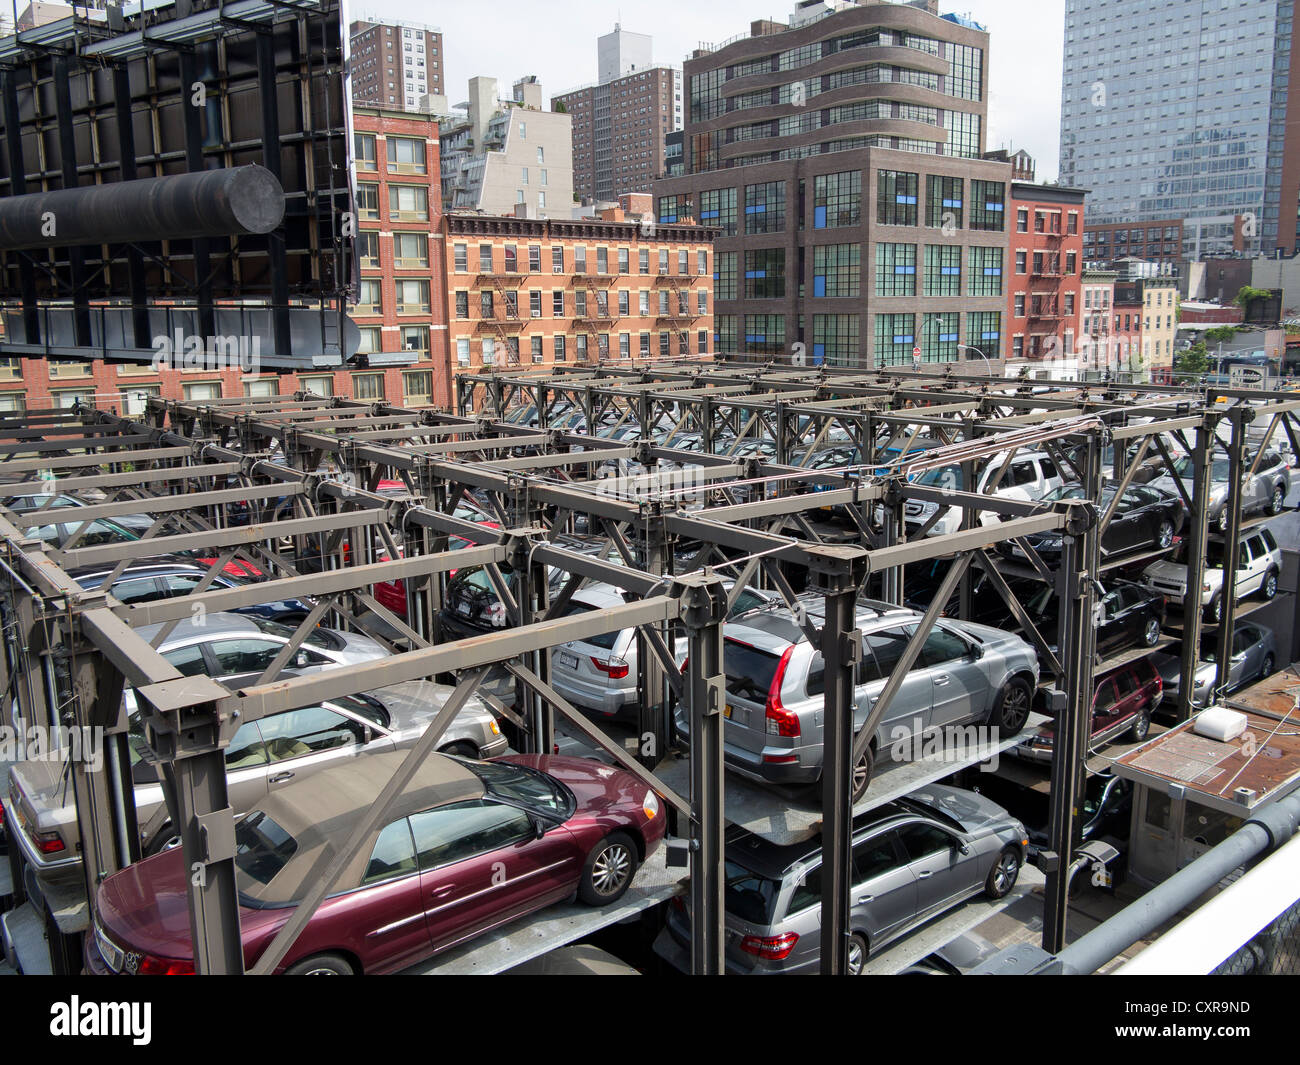 Parcheggio auto, impilati garage, Manhattan, New York City, Stati Uniti d'America, America del Nord, America Foto Stock